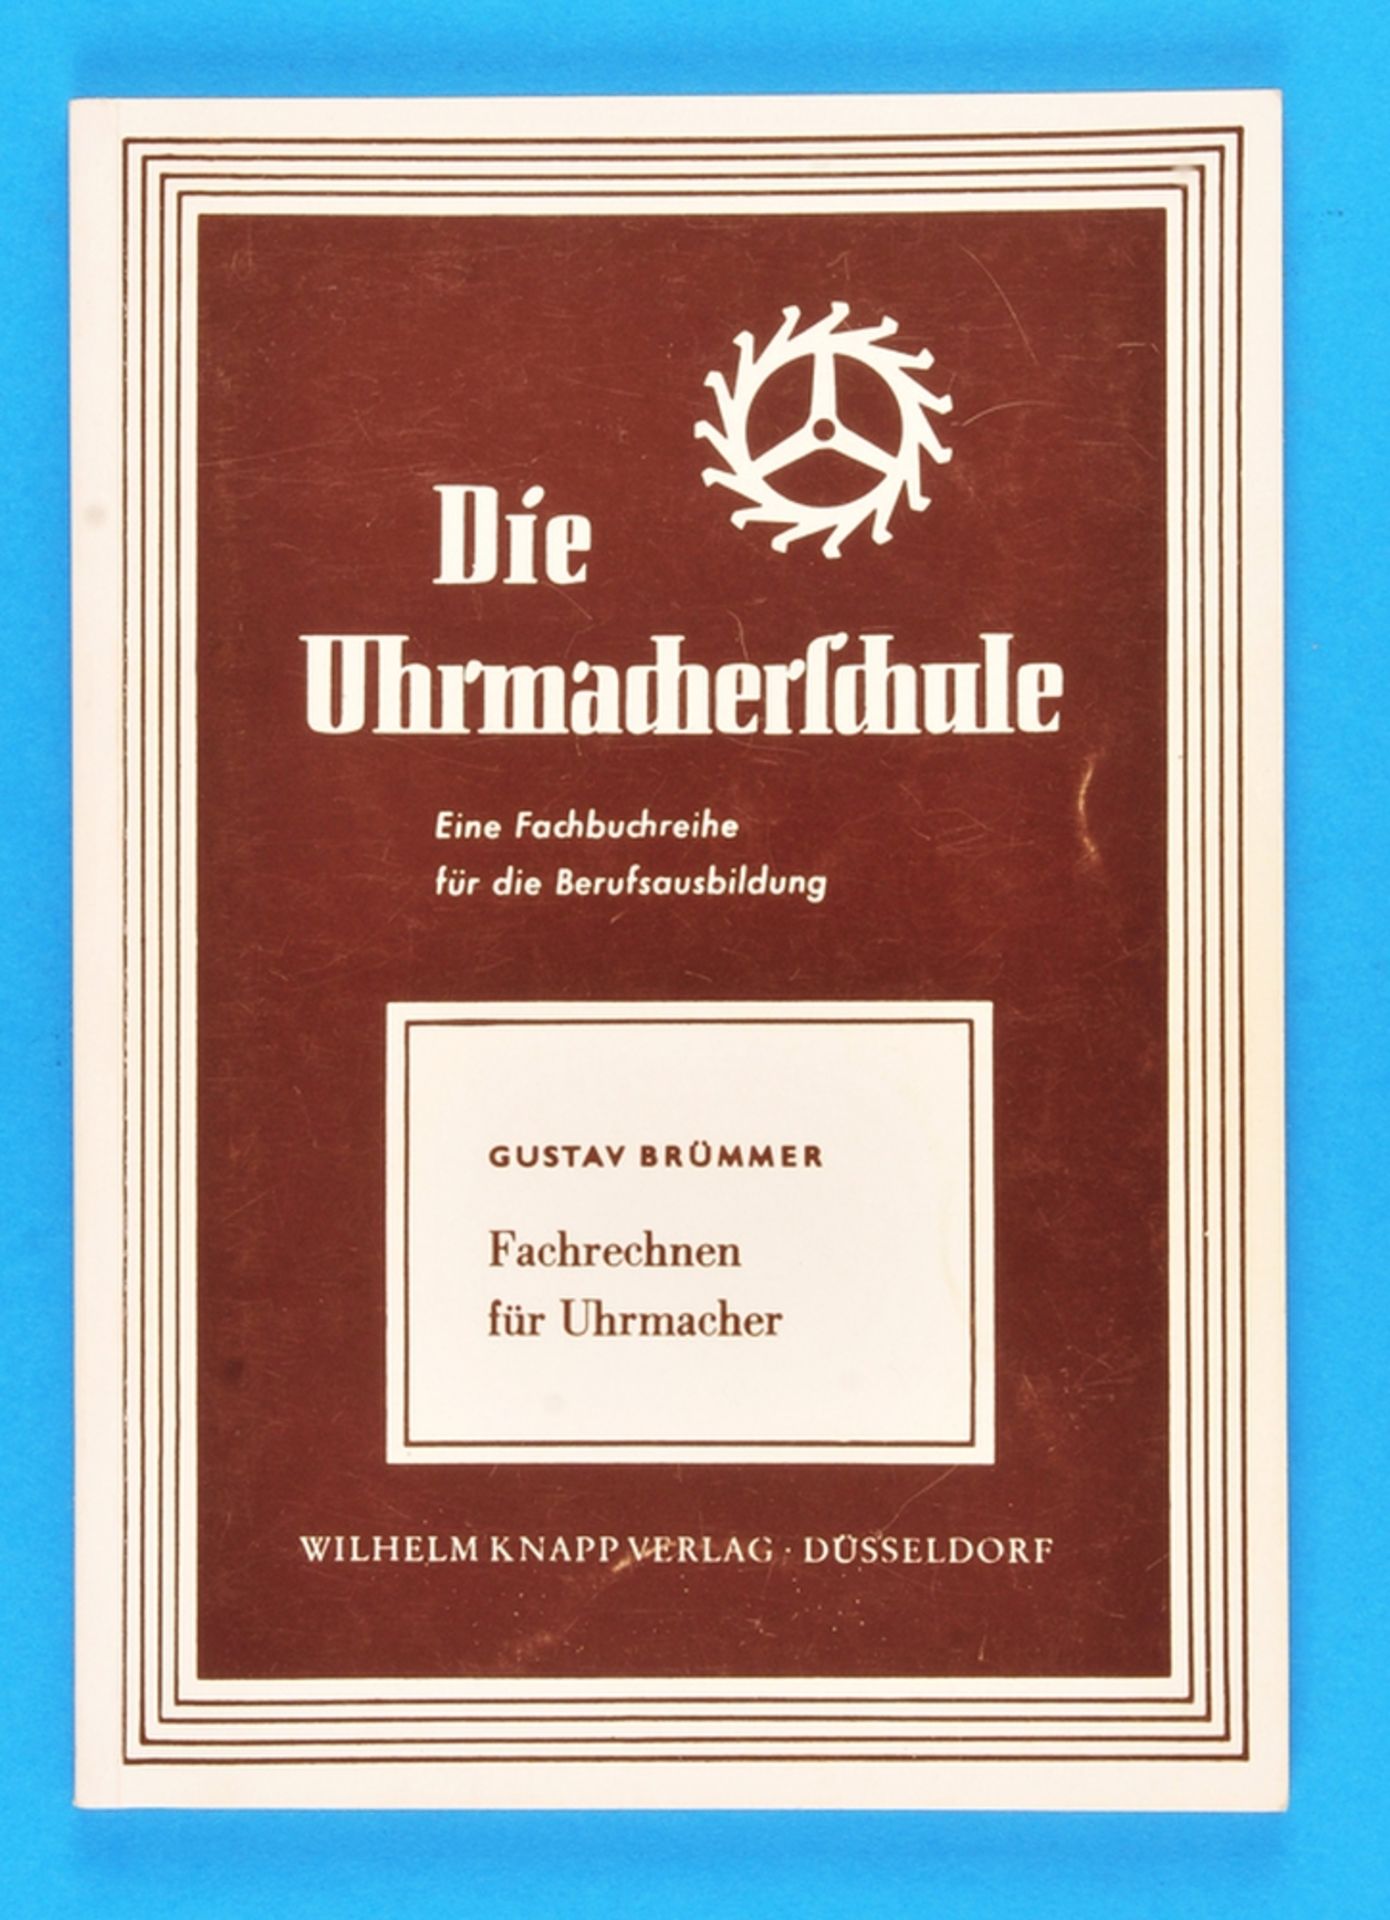 Gustav Brümmer, Die Uhrmacherschule – Fachrechnen für Uhrmacher, 11. Auflage,1992